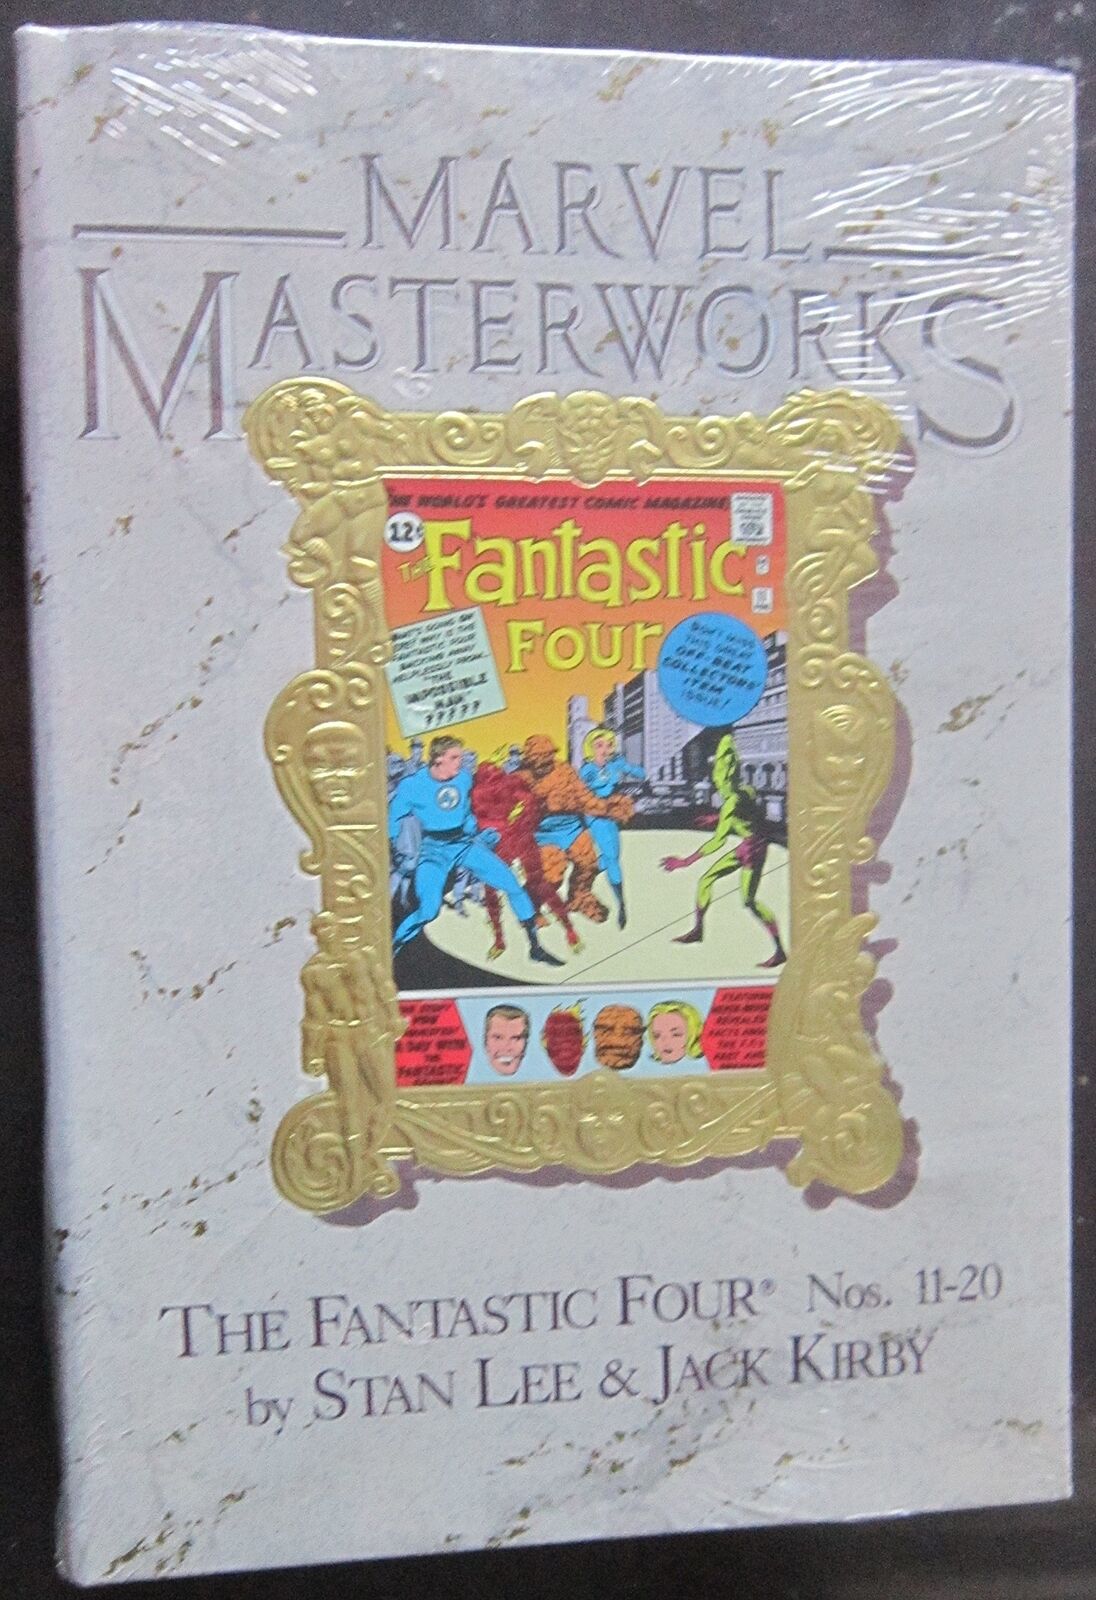 Fantastic Four #11-20 (Marvel Masterworks, Vol. 6) - Lee, Stan - Hardcover -...